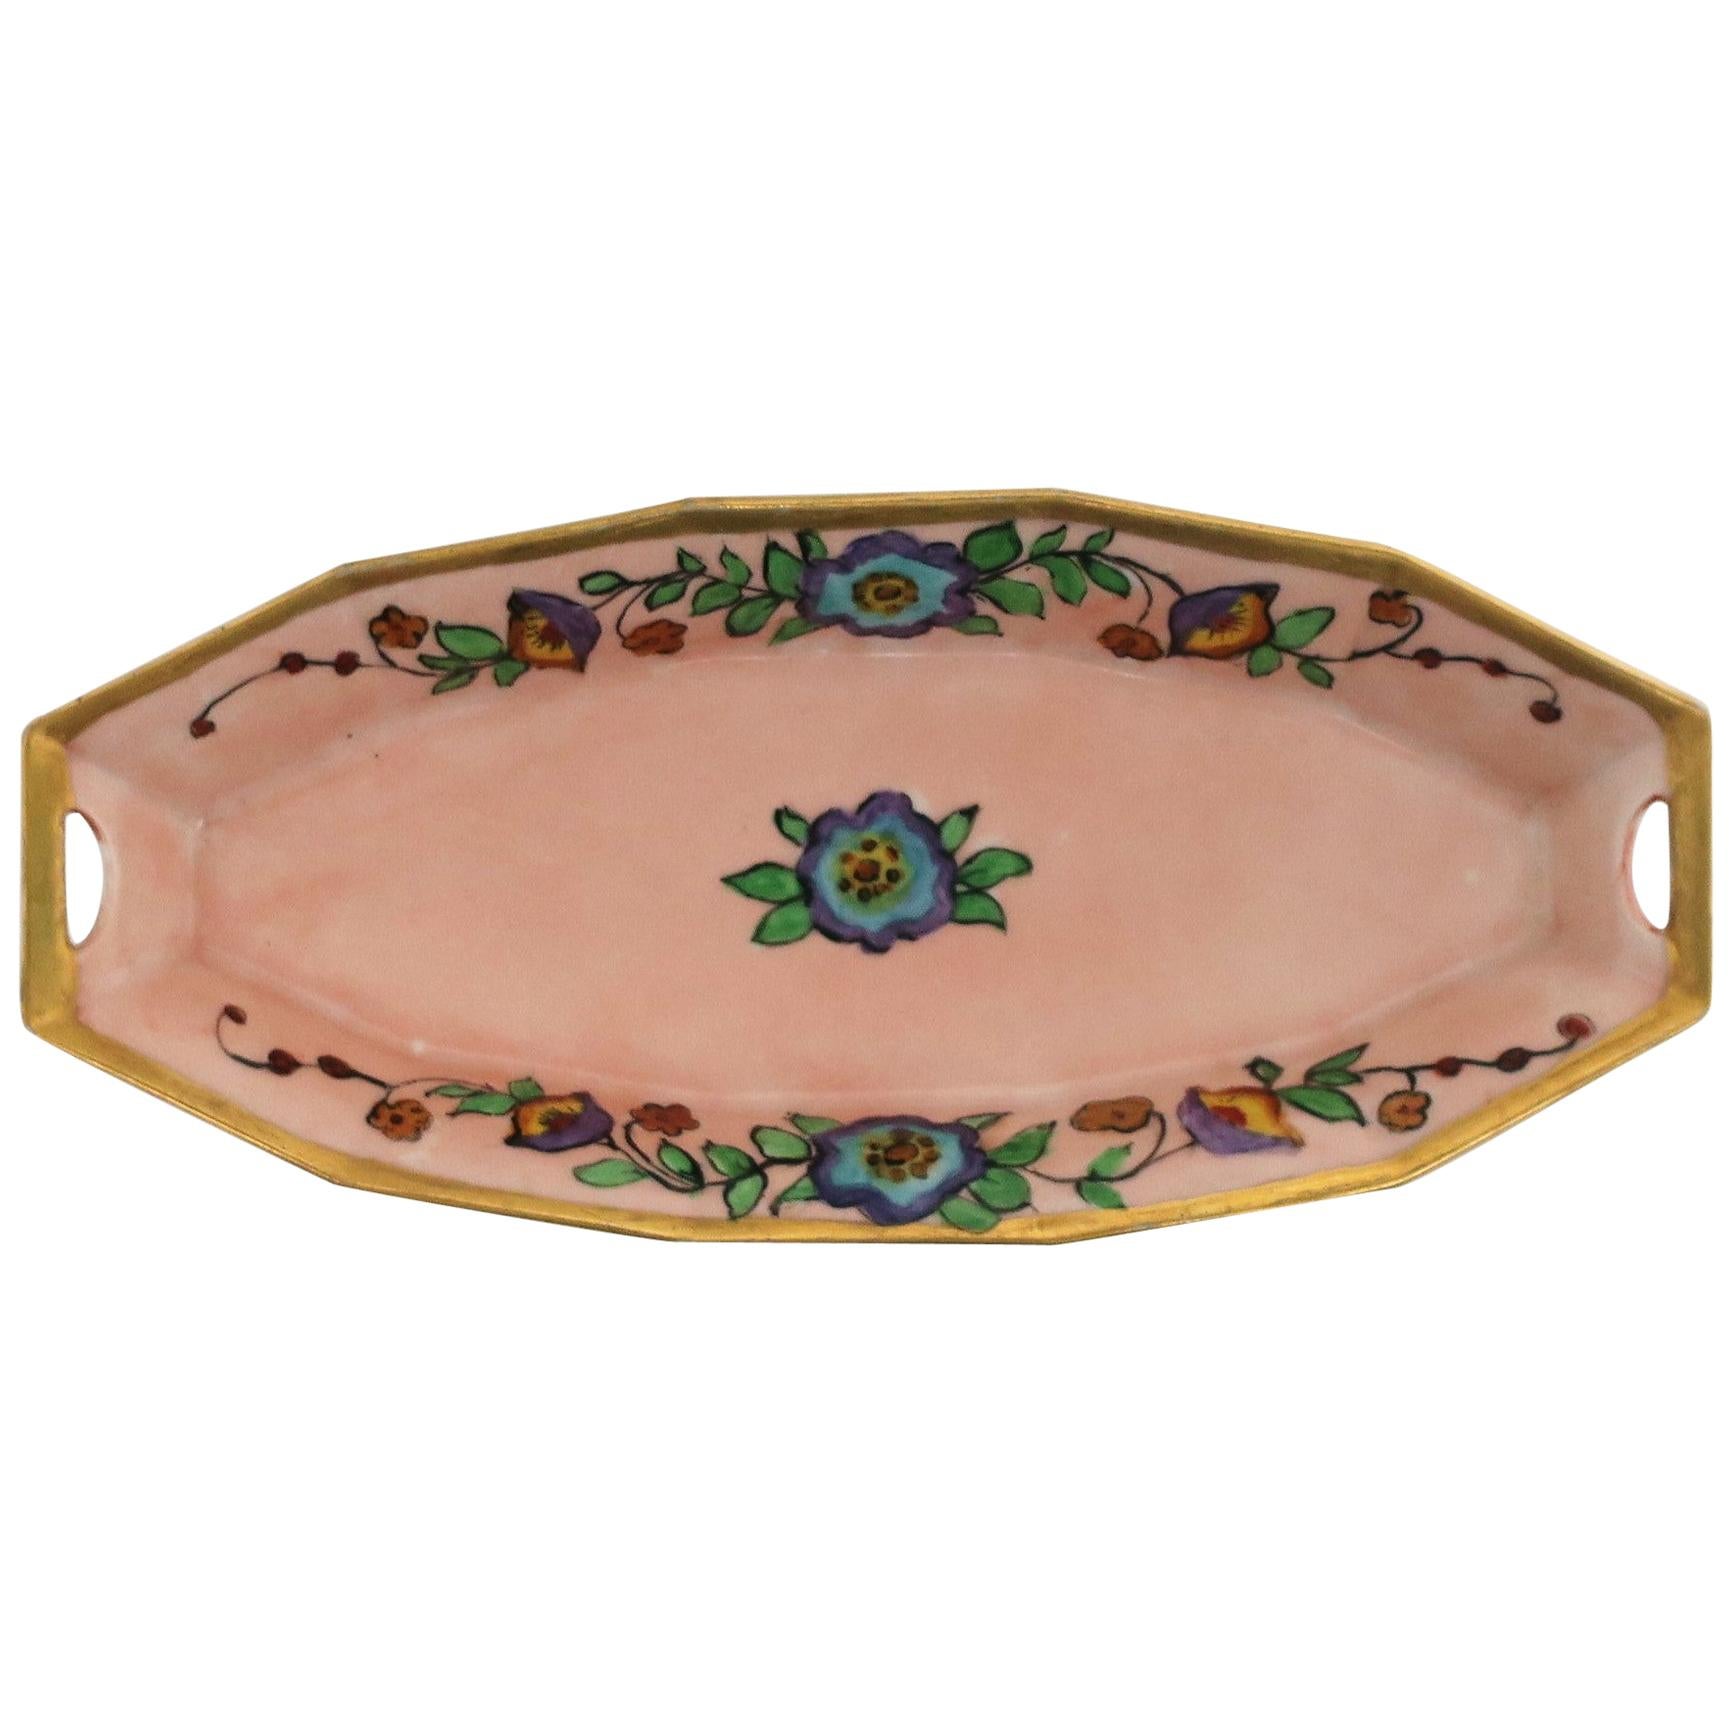 Austrian Art Nouveau Porcelain Pink and Gold Dish